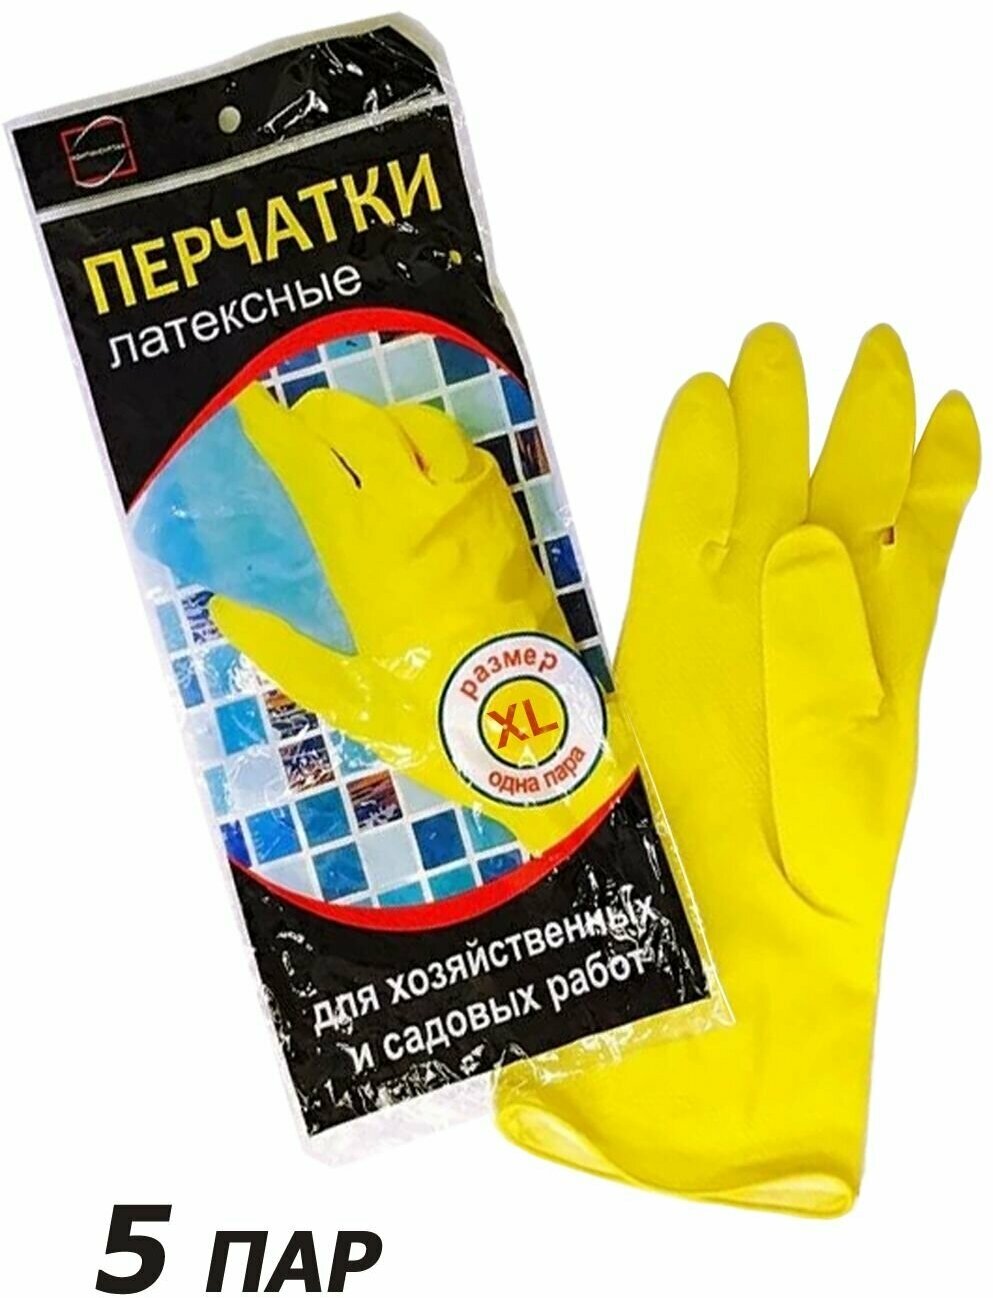 5 пар. Перчатки латексные для хозяйственных и садовых работ желтые размер 10 (XL)